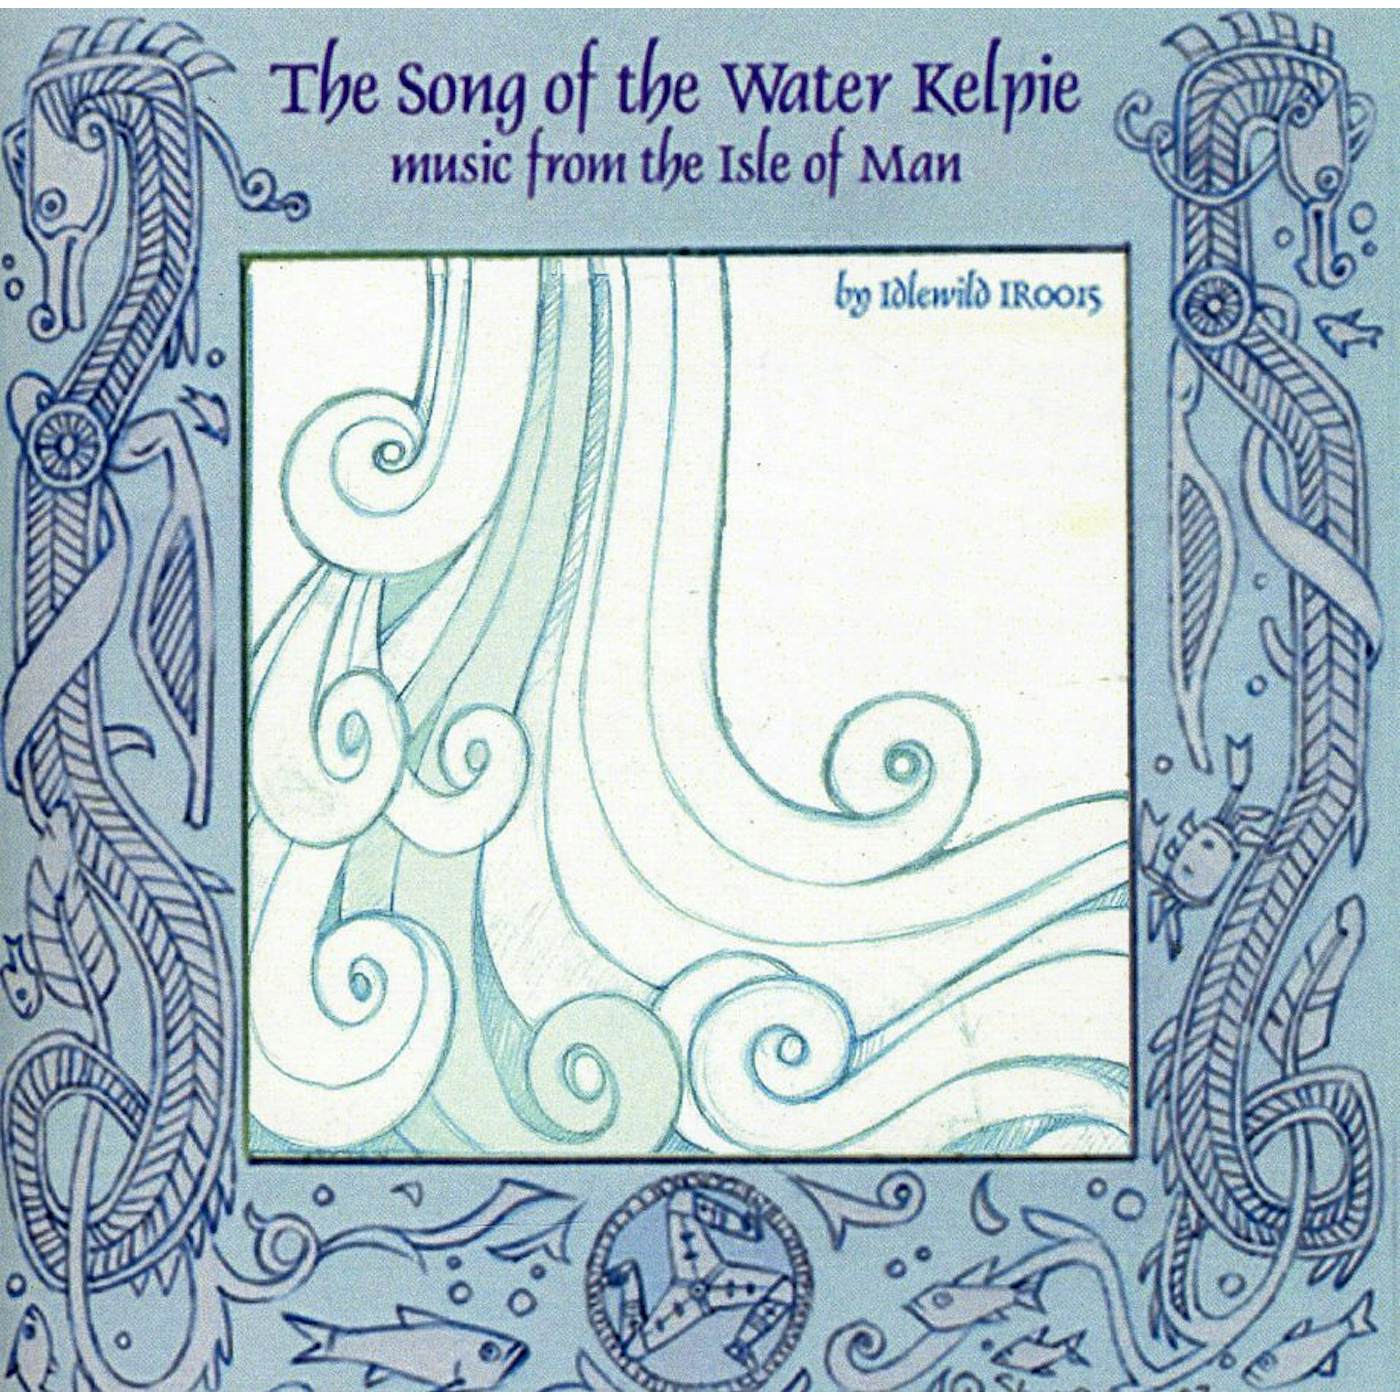 Idlewild SONG OF THE WATER KELPIE CD